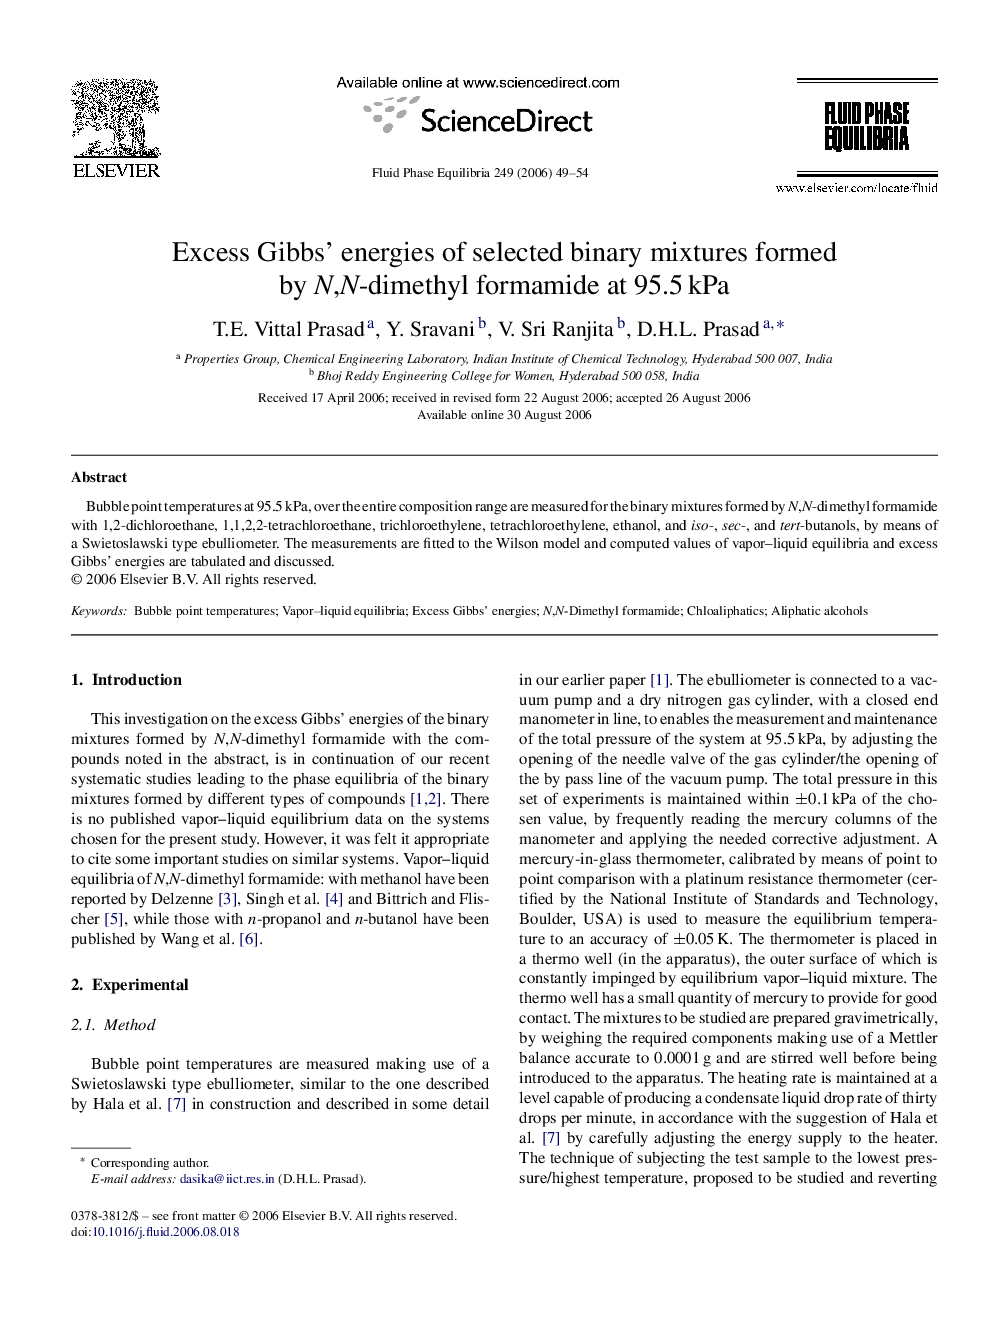 Excess Gibbs’ energies of selected binary mixtures formed by N,N-dimethyl formamide at 95.5 kPa